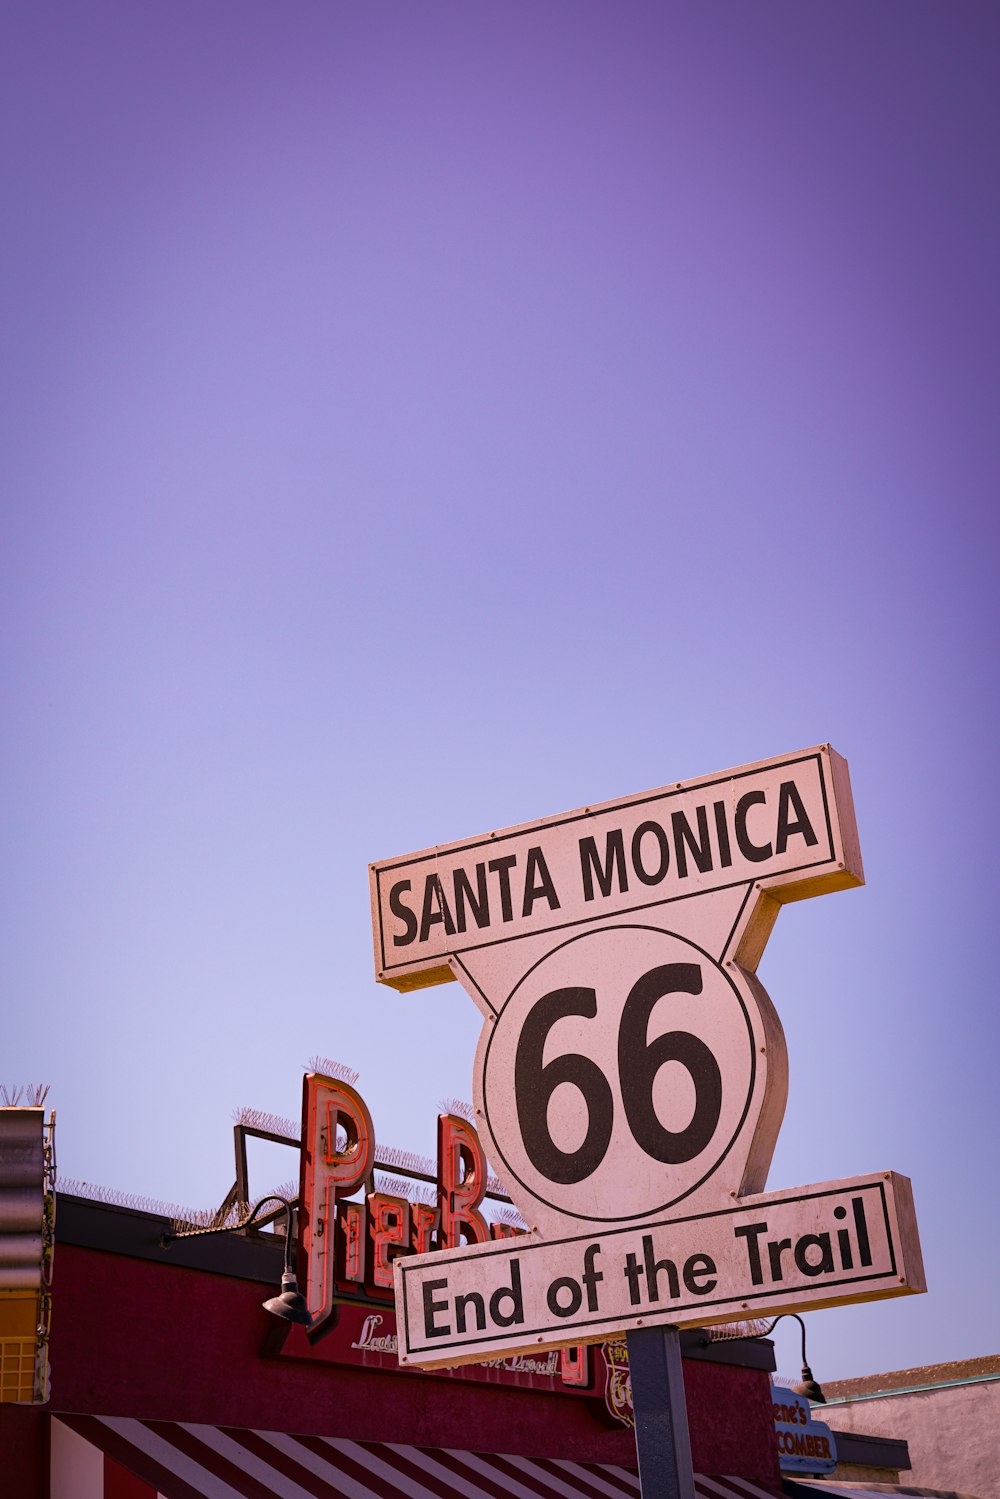 산타 모니카 66 낮 동안 푸른 하늘 아래 트레일의 끝 표지판